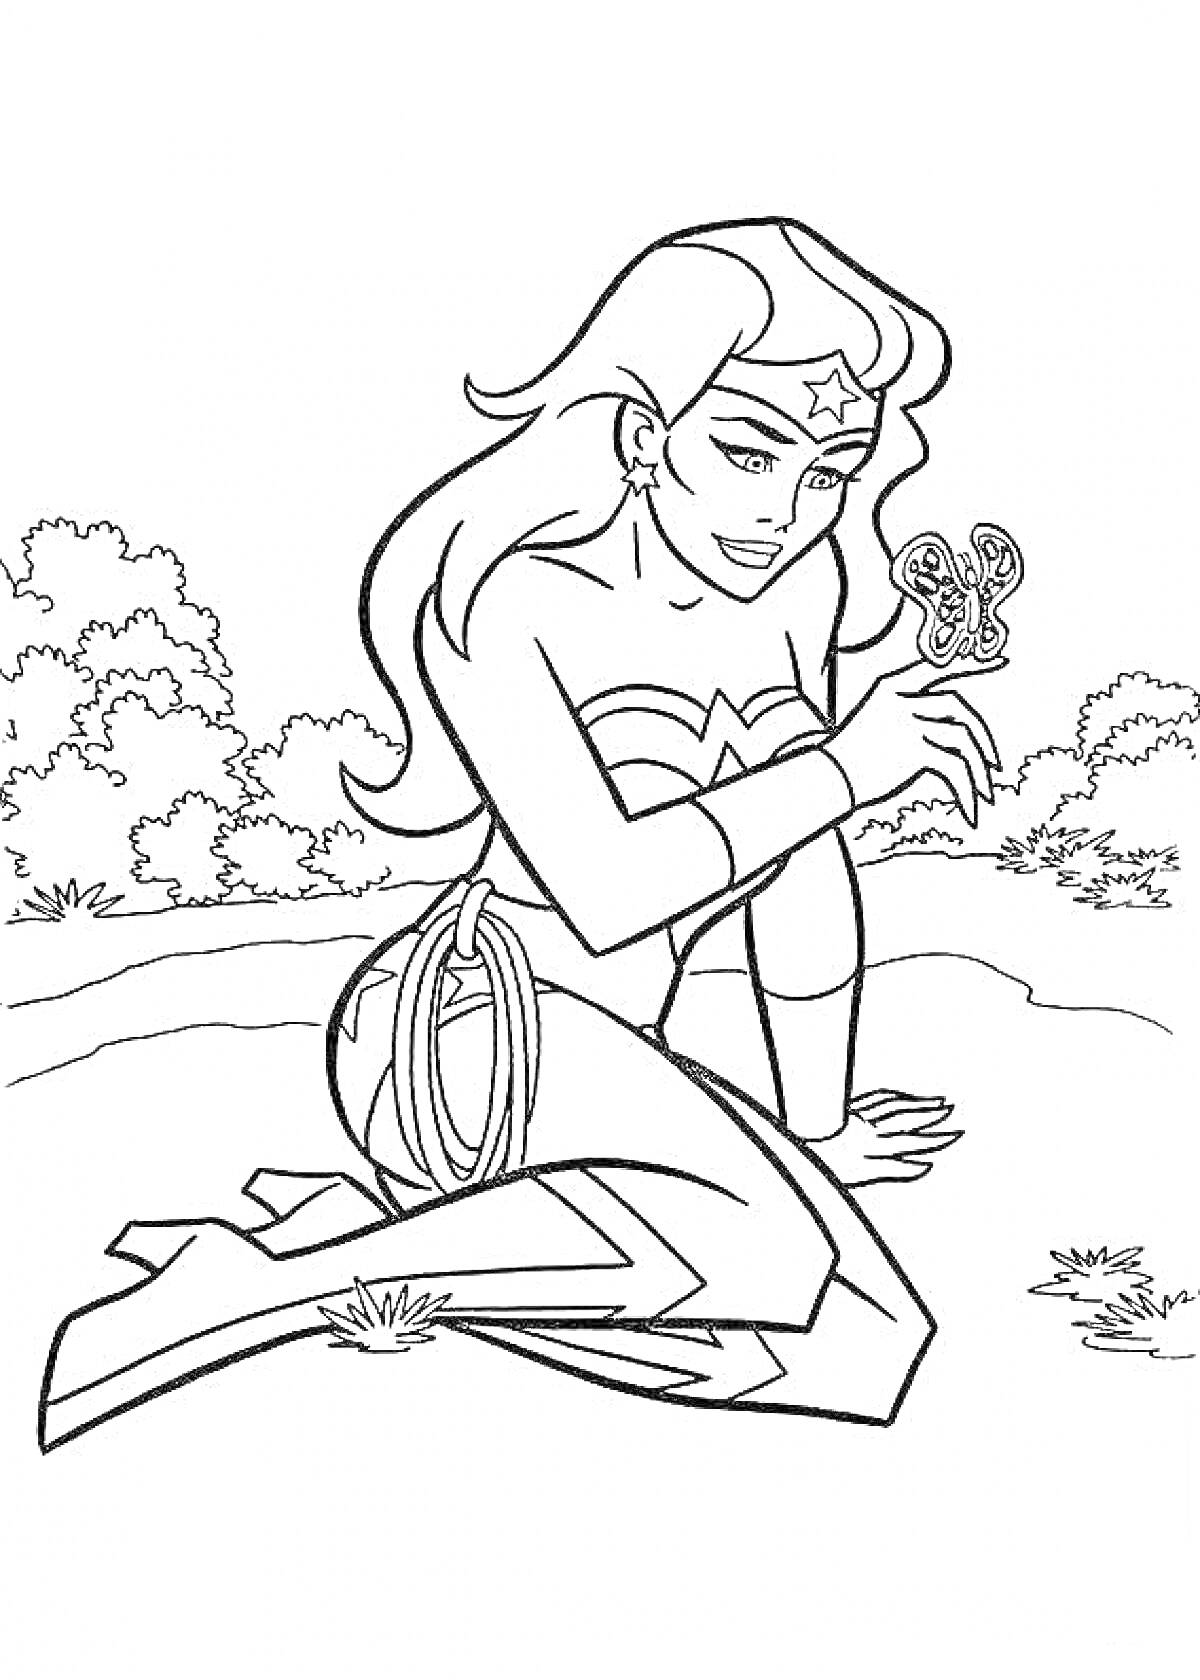 Чудо-женщина сидит на коленях с волшебной верёвкой, держа в руках бабочку на фоне деревьев